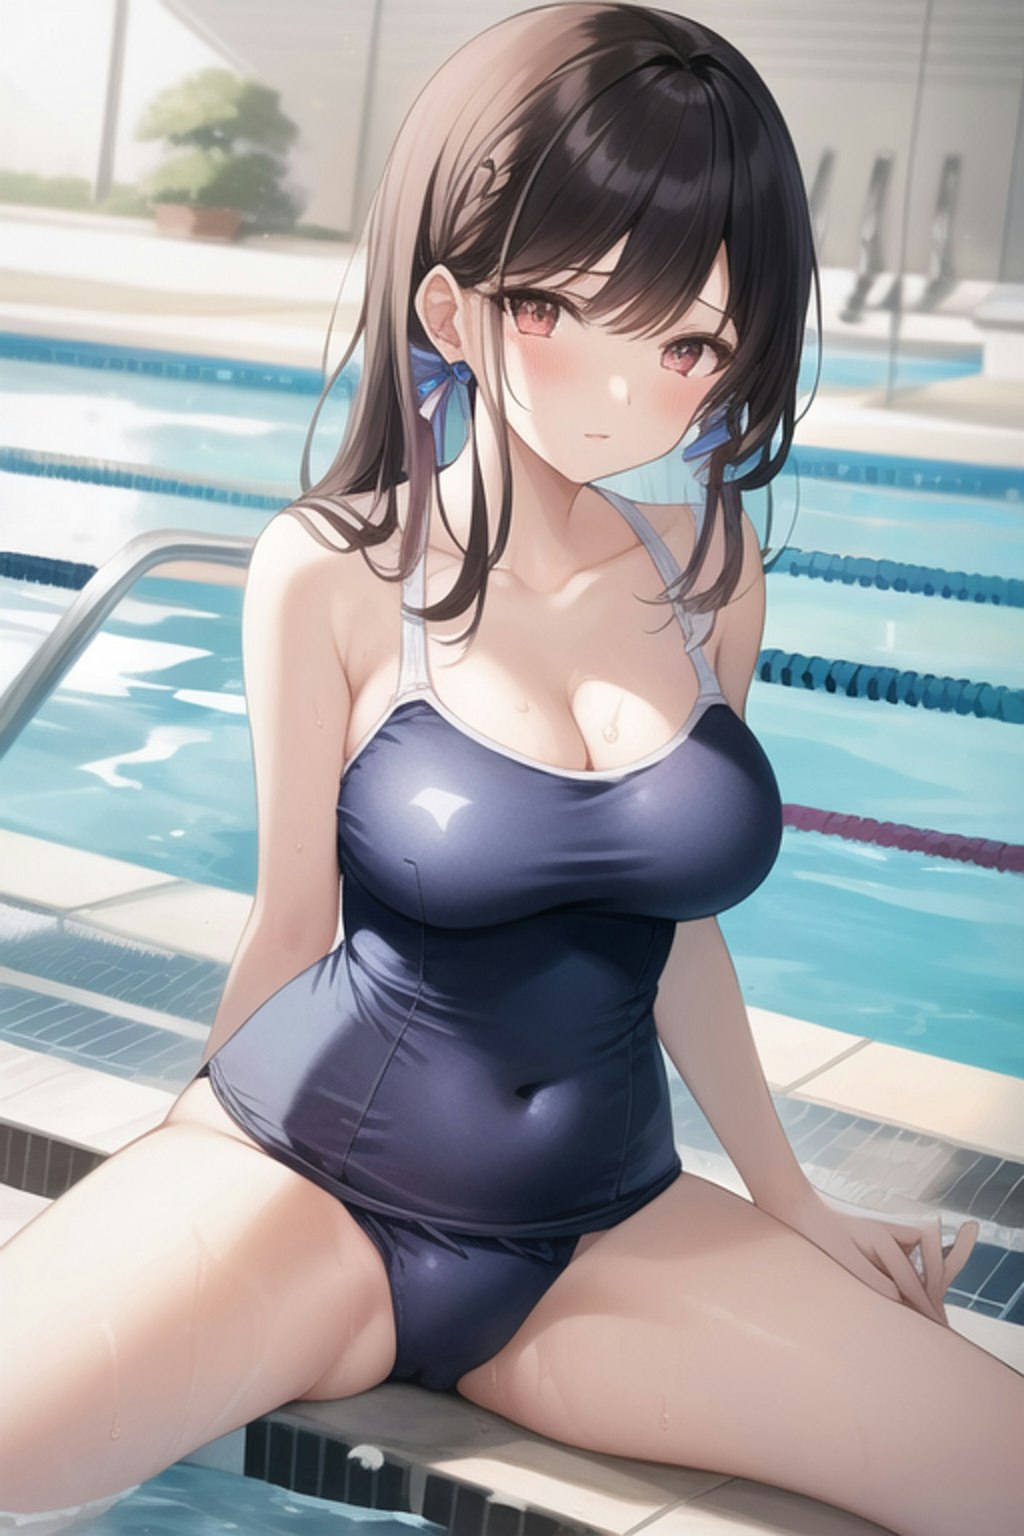 練習(夏休みなので泳ぎの練習をしにきた水着少女)